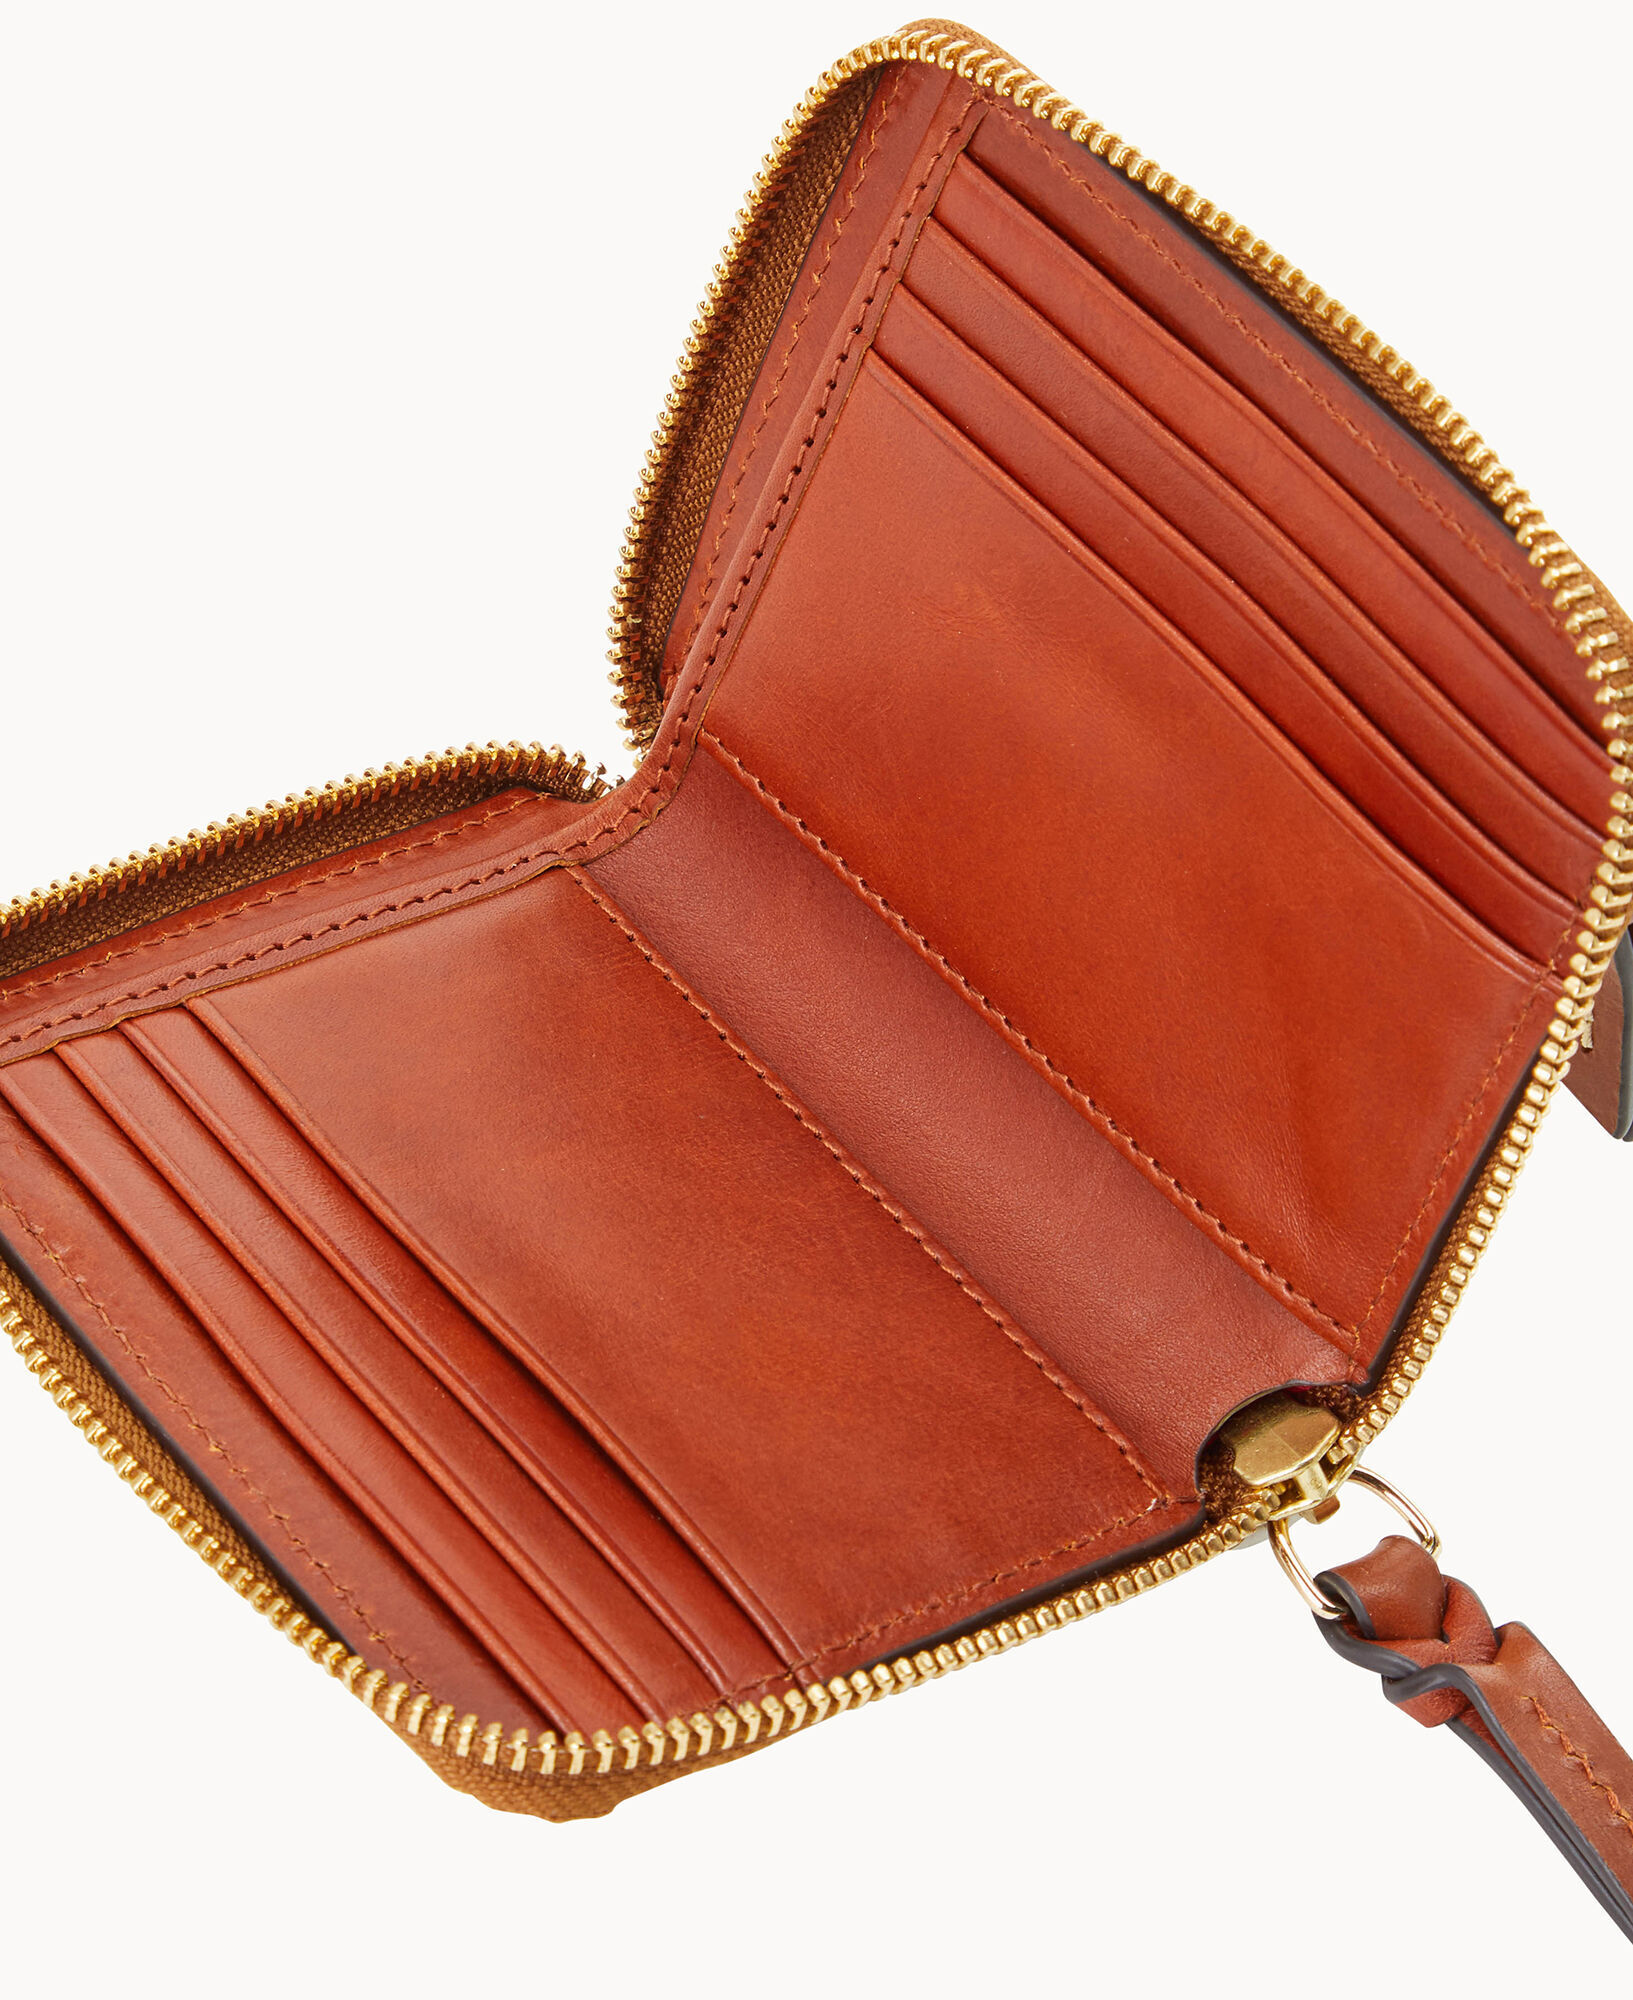 Dooney & Bourke Handbag, Pebble Grain Small Zip Crossbody